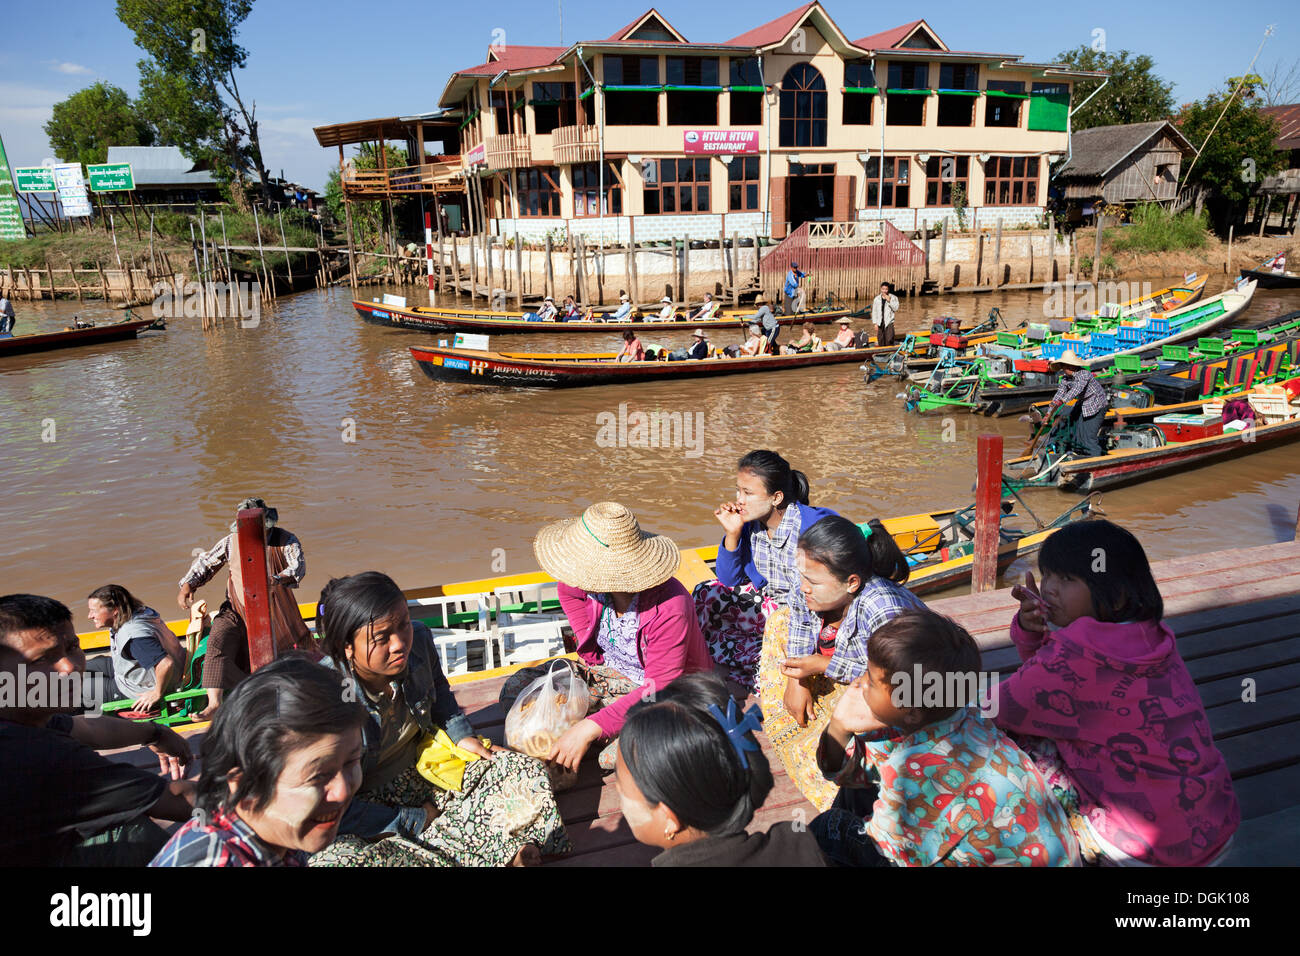 Un restaurant, discutant les femmes et les bateaux de plaisance par le lac Inle au Myanmar. Banque D'Images